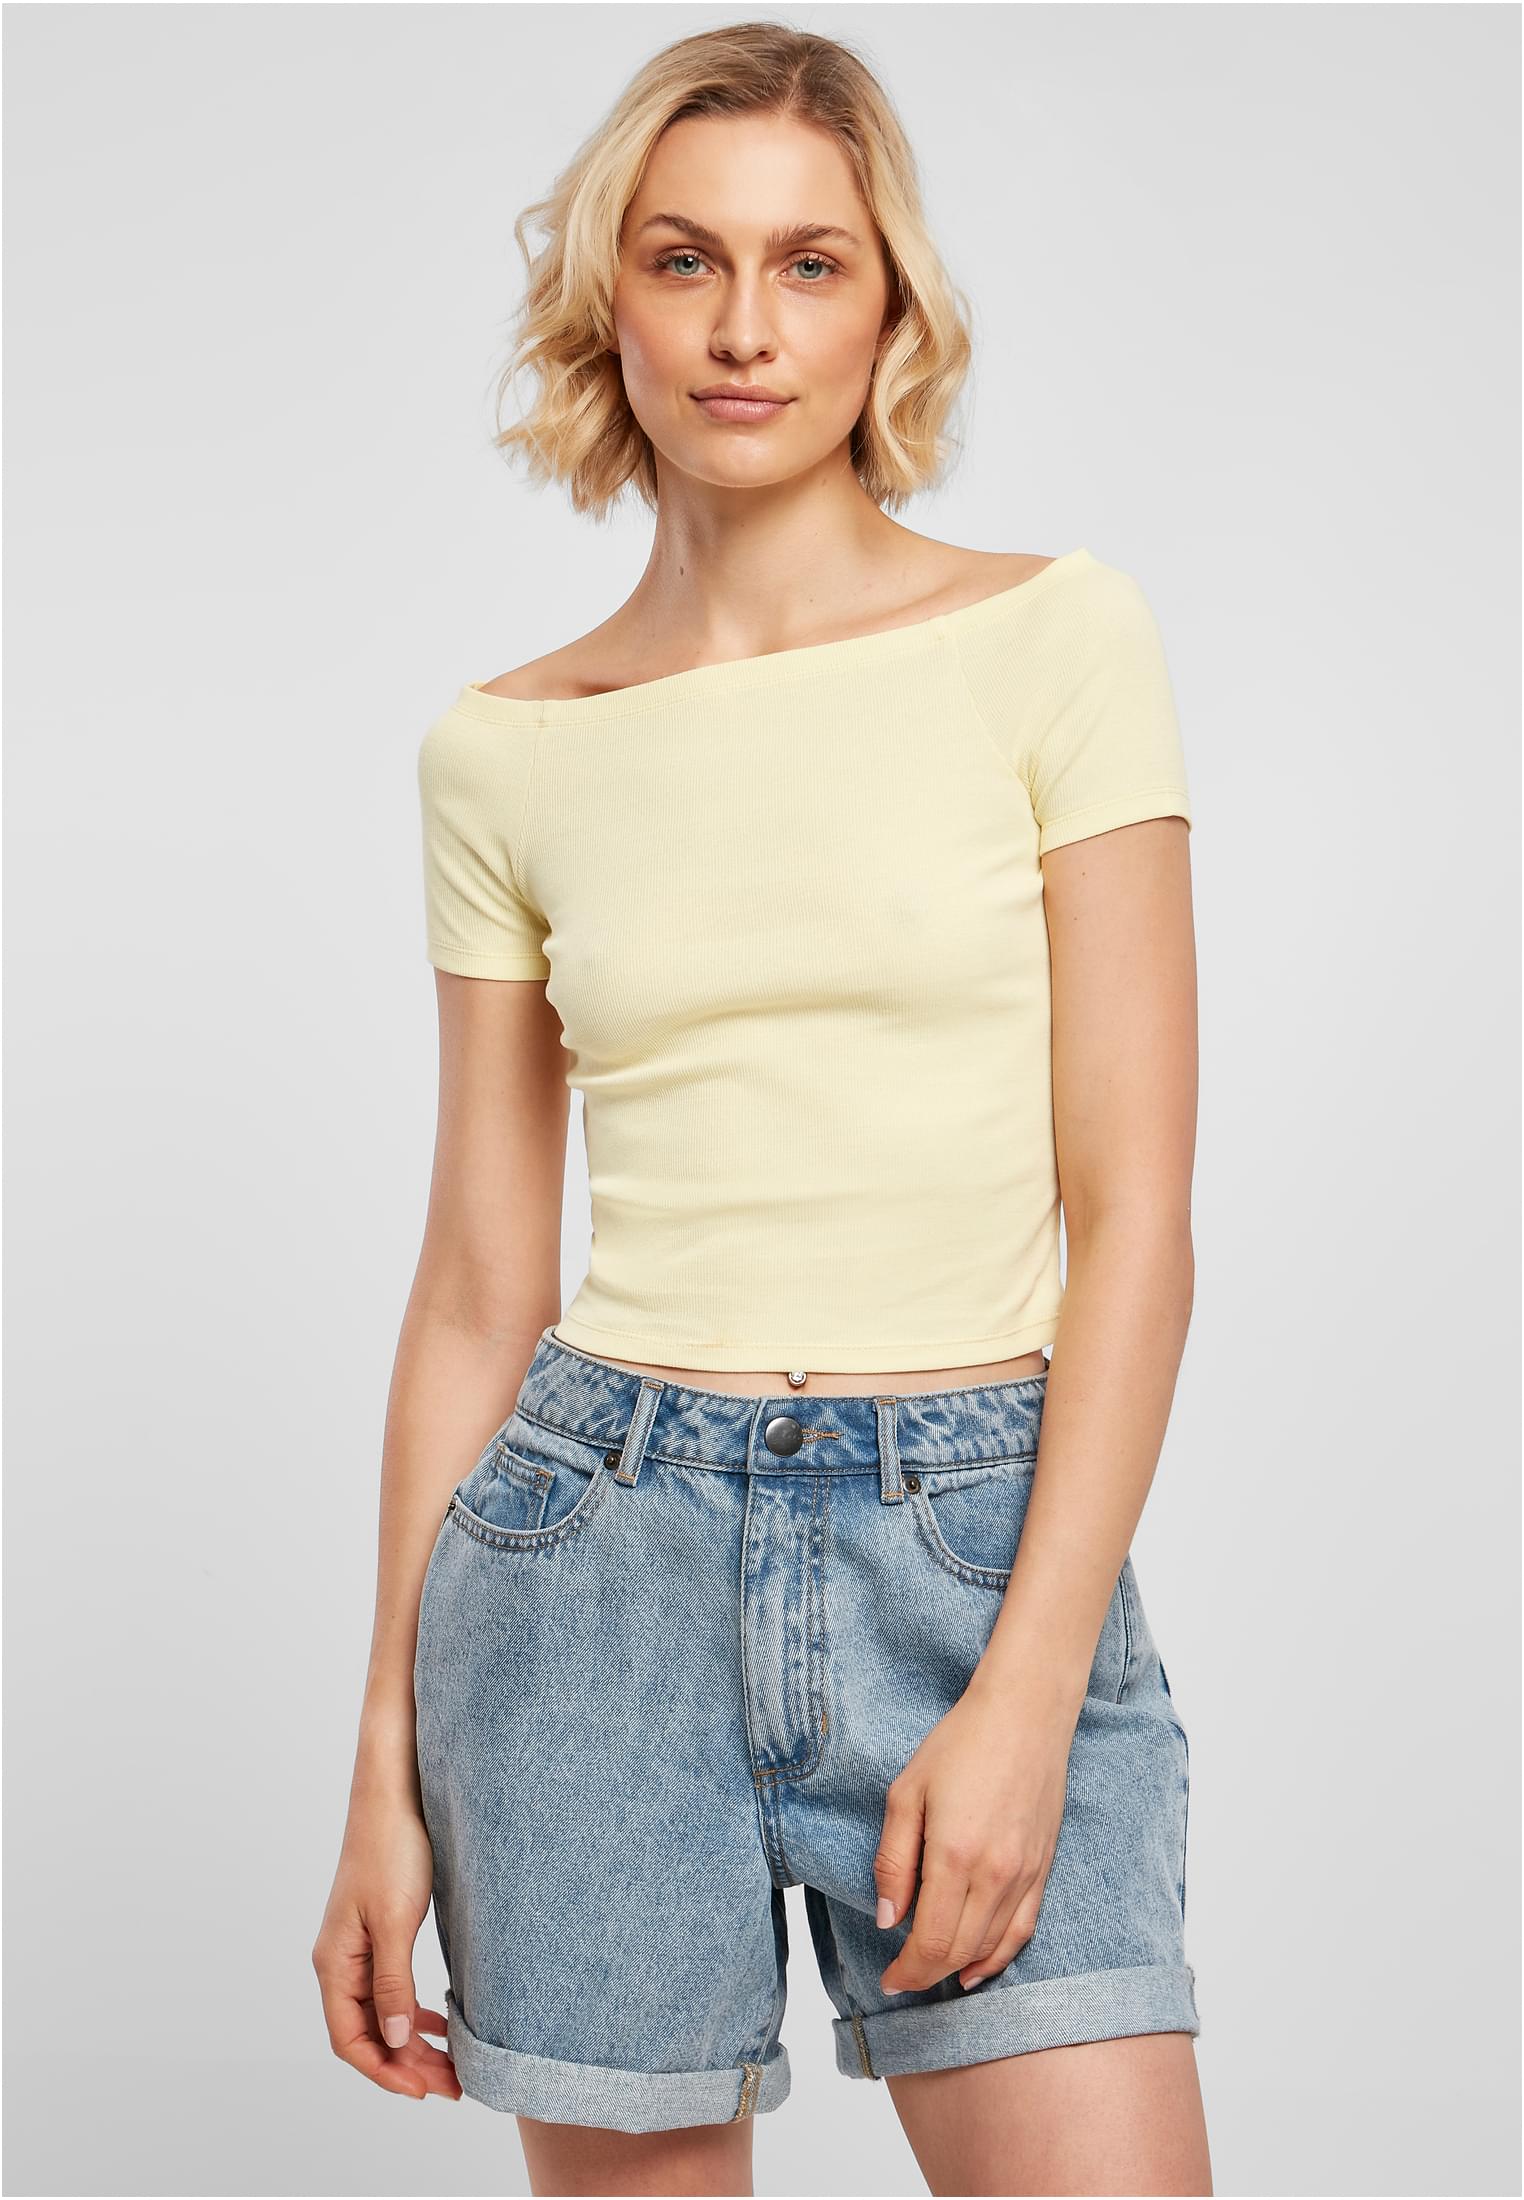 Levně Dámské tričko s volným ramenem měkké žluté barvy